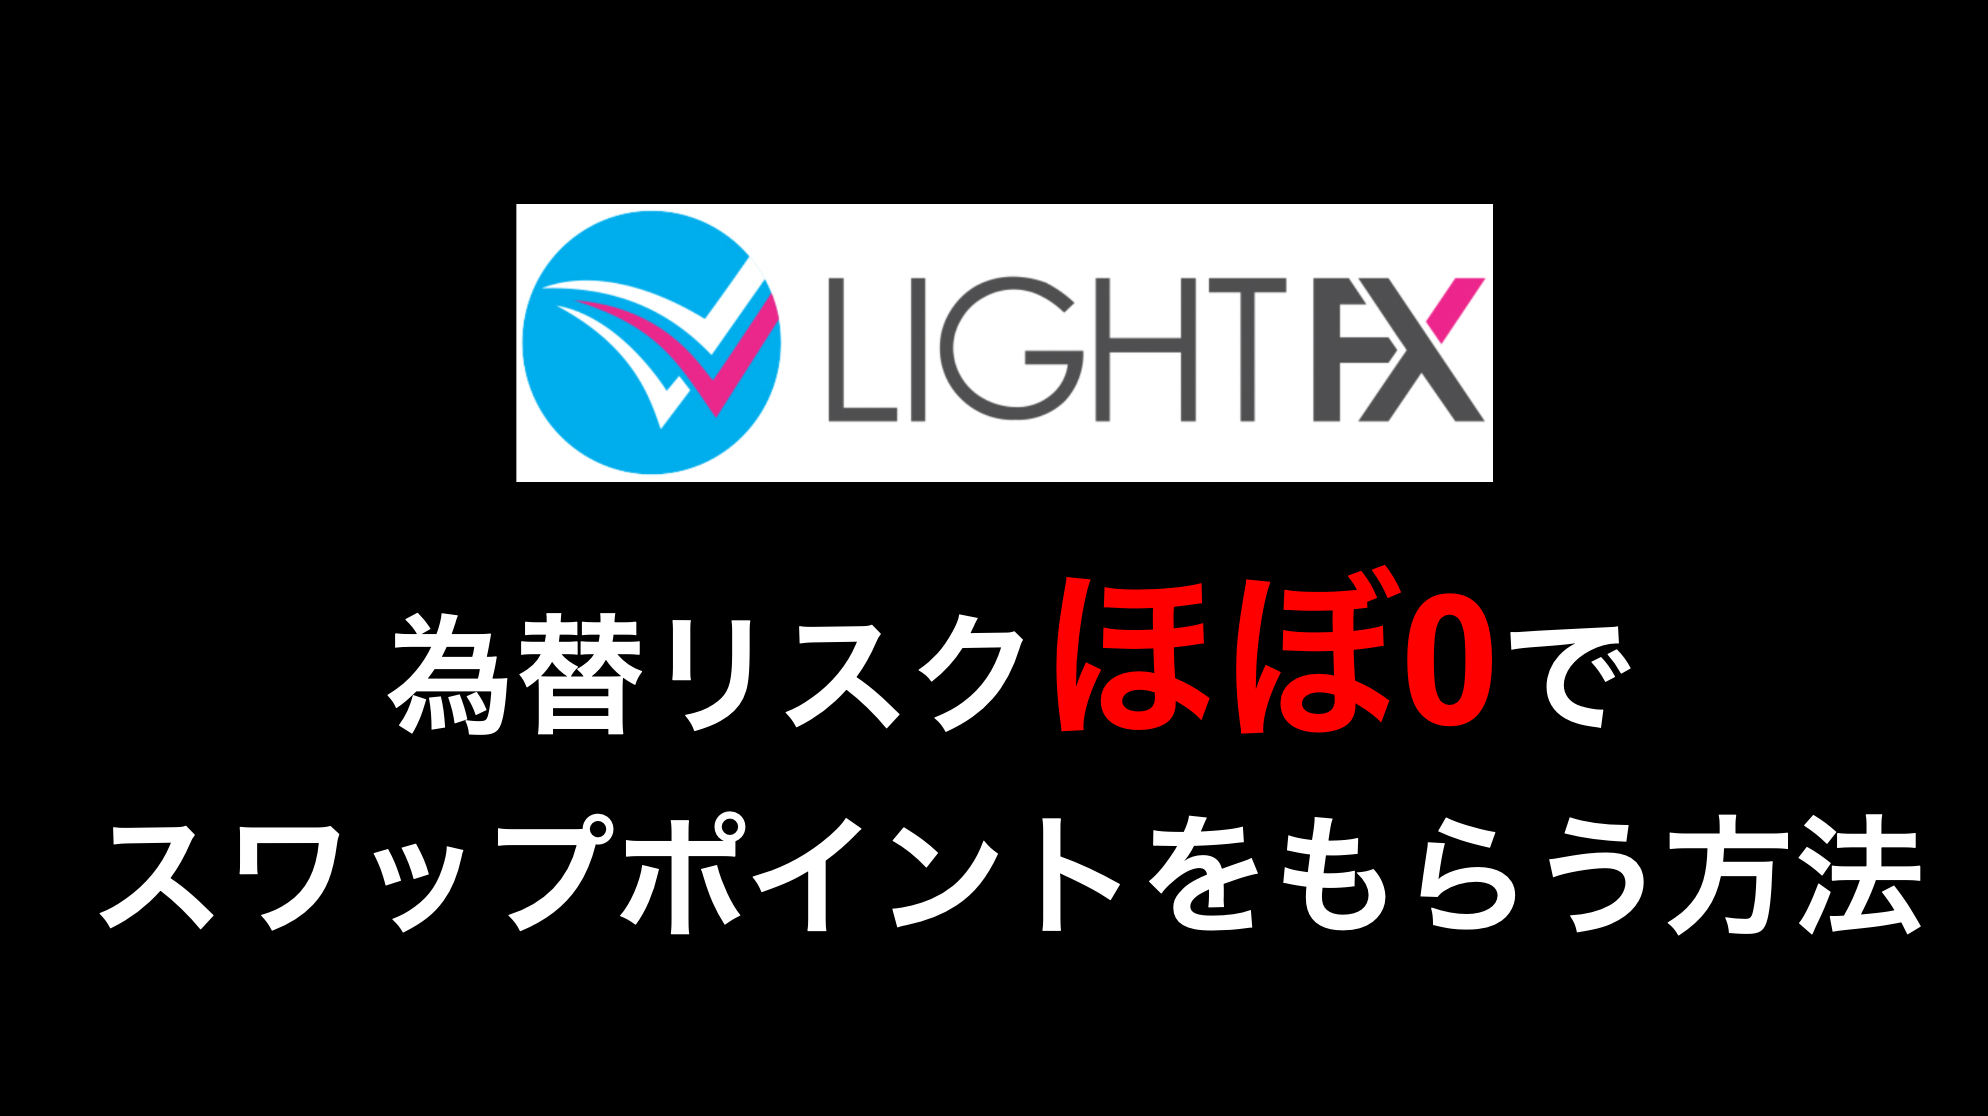 LIGHT FX アービトラージ